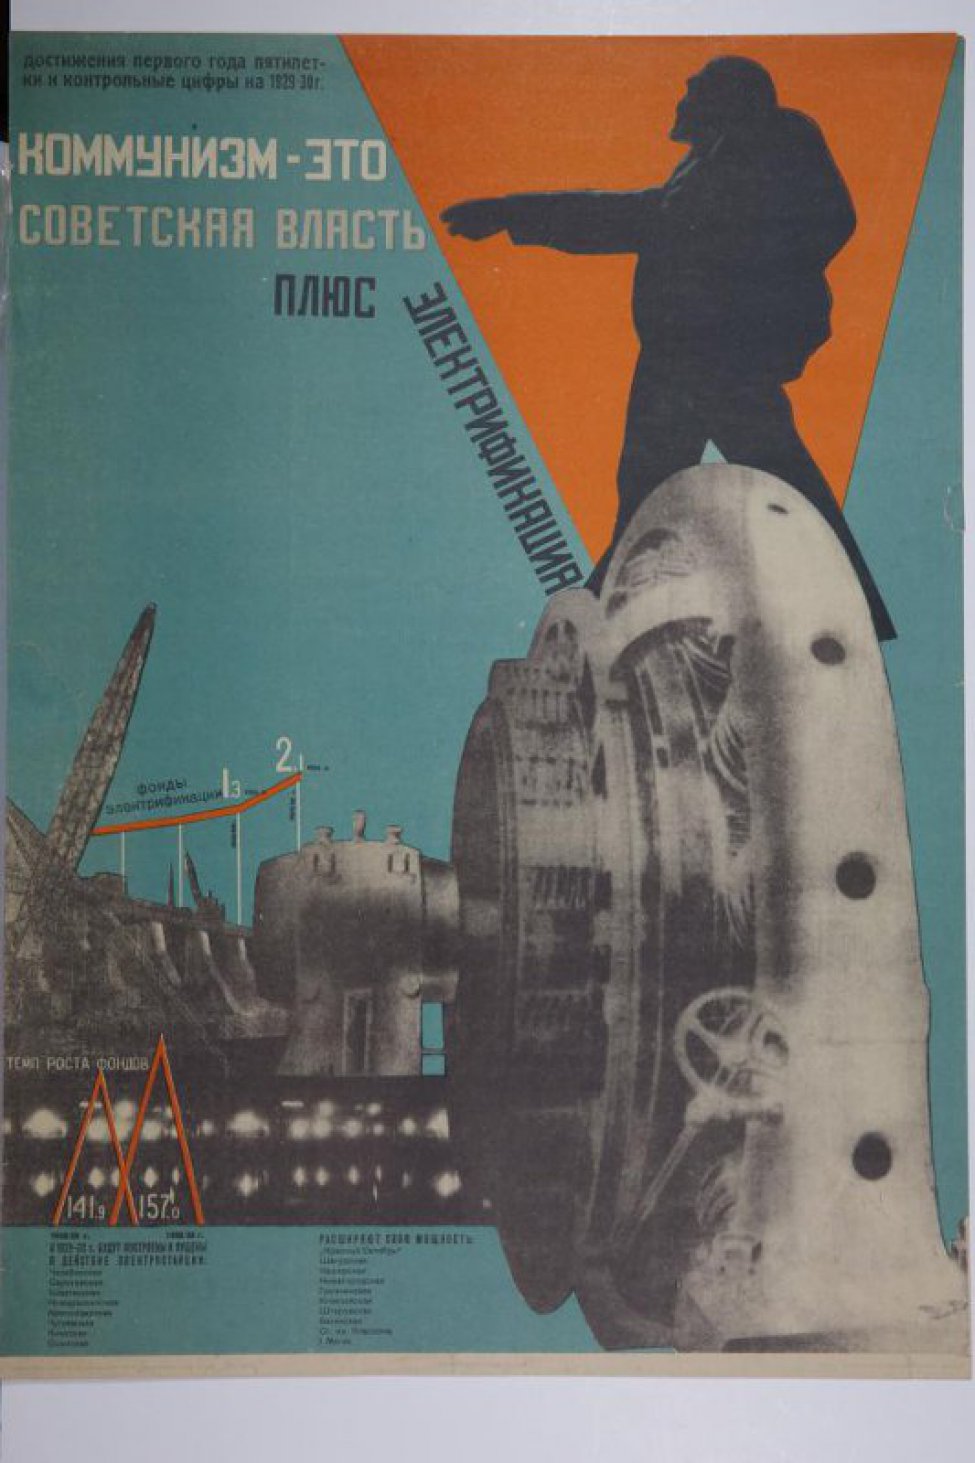 Изображен в правом верхнем углу  силуэт В.И.Ленина с вытянутой рукой указывающий на слова:" Коммунизм" и т.д. в левом верхнем углу под заголовок:  "  Достижения первого года пятилетки".Внизу названия электростанций. Остальная часть занята изображением  динамомашины.